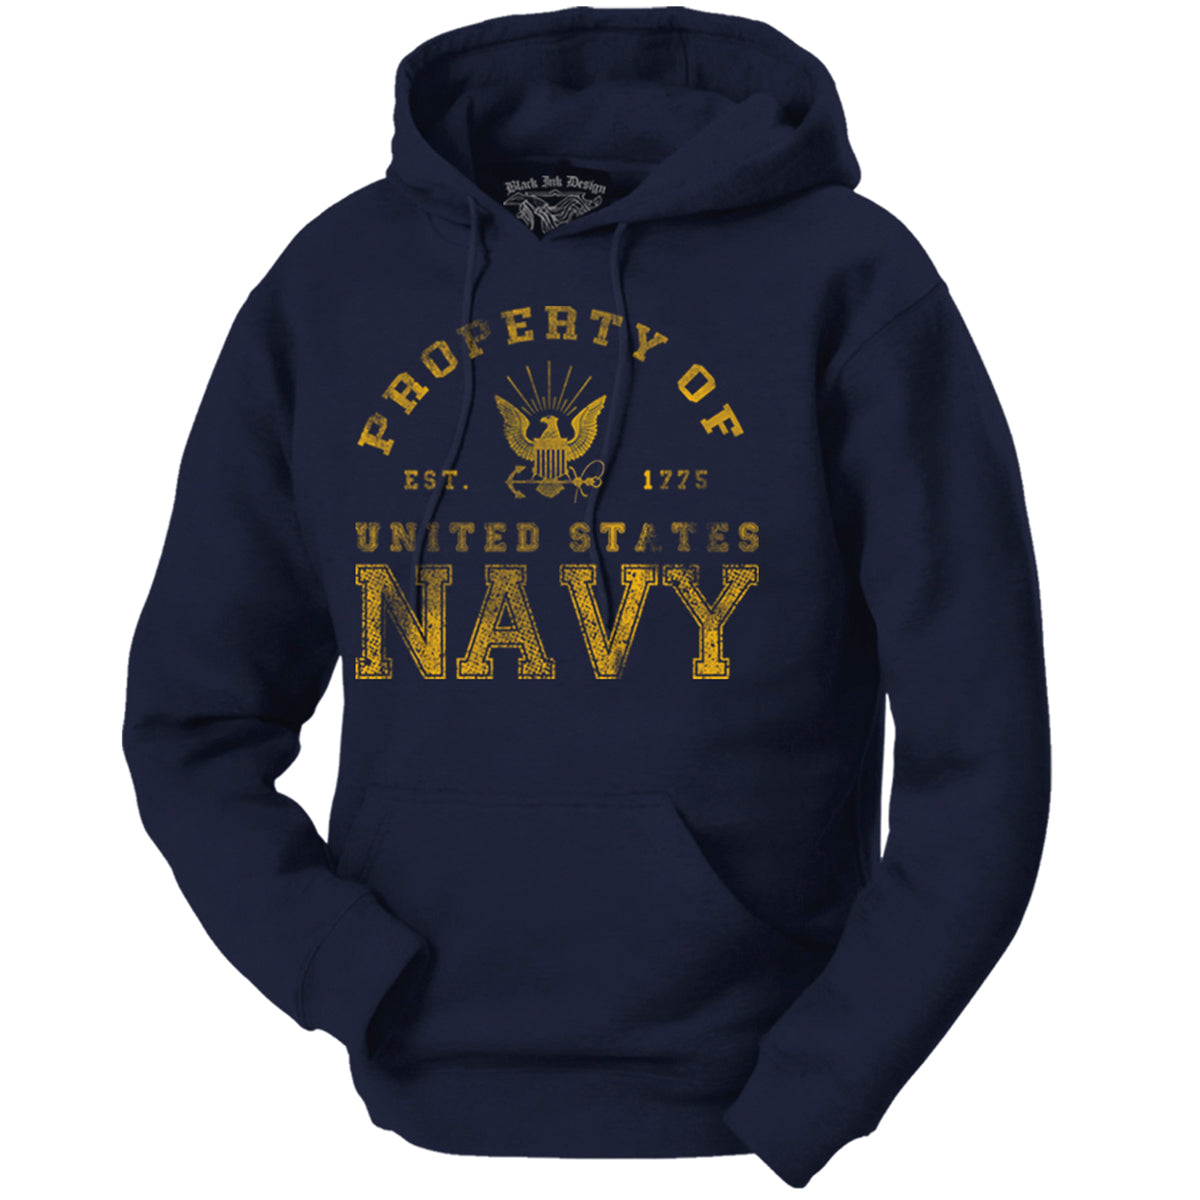 US Navy Hoodies